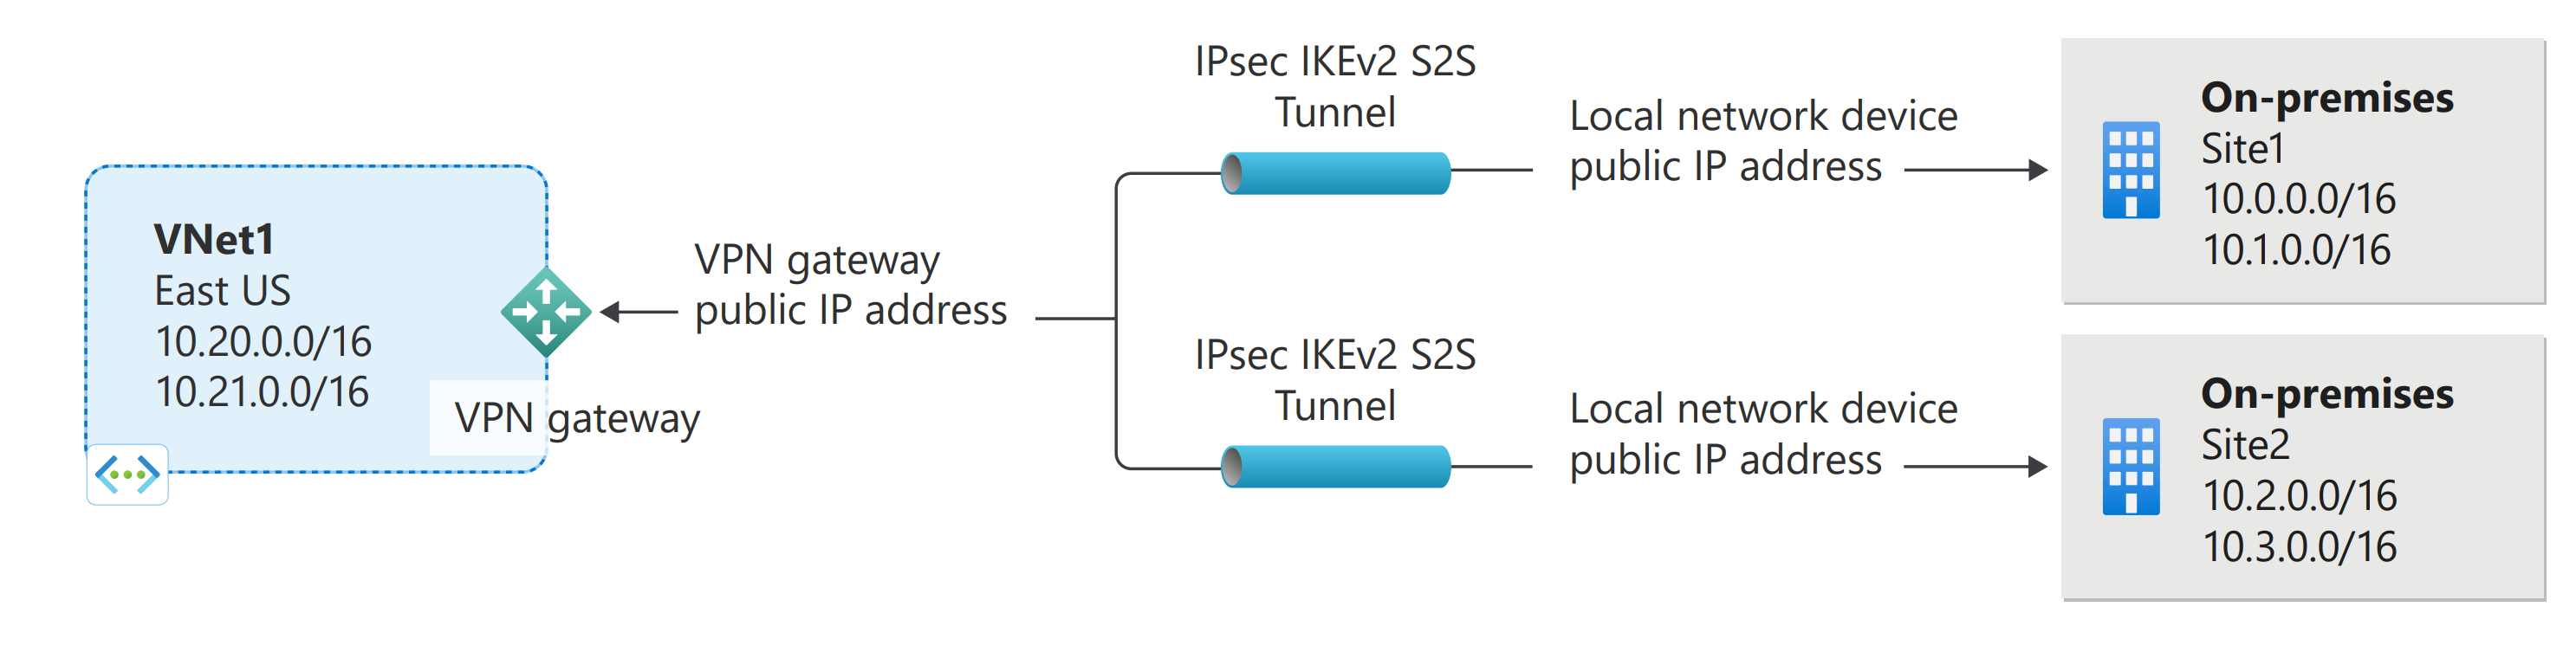 رسم تخطيطي يوضح اتصالات متعددة لبوابة Azure VPN من موقع إلى موقع.